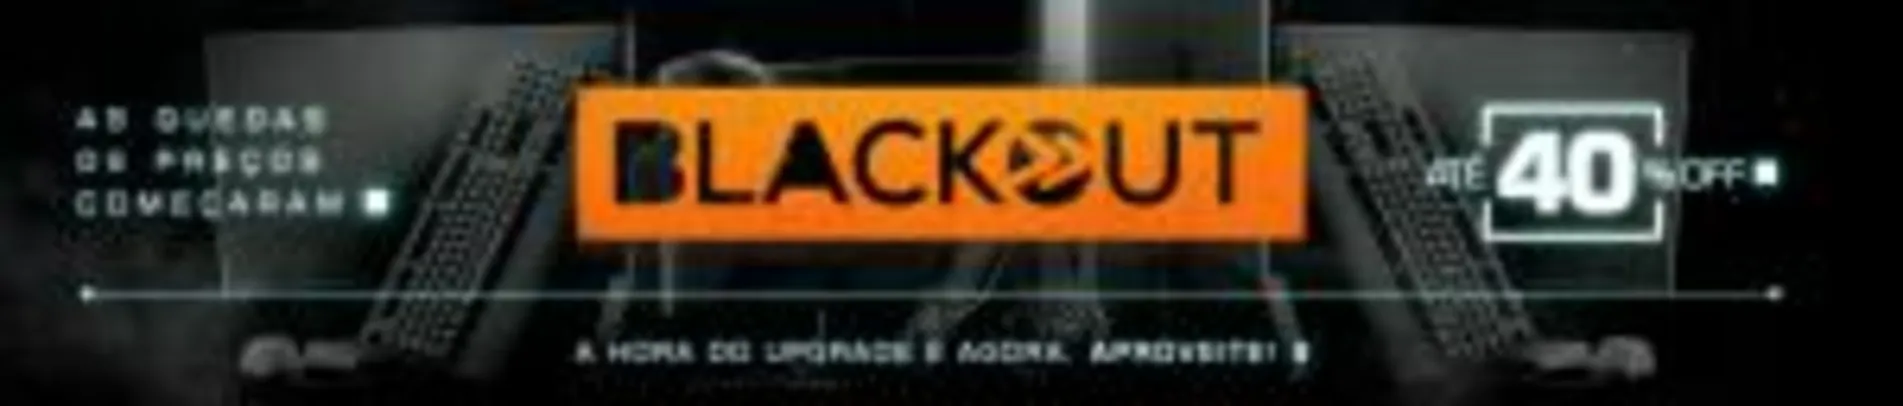 Ofertas Blackout Kabum - Até 40% OFF